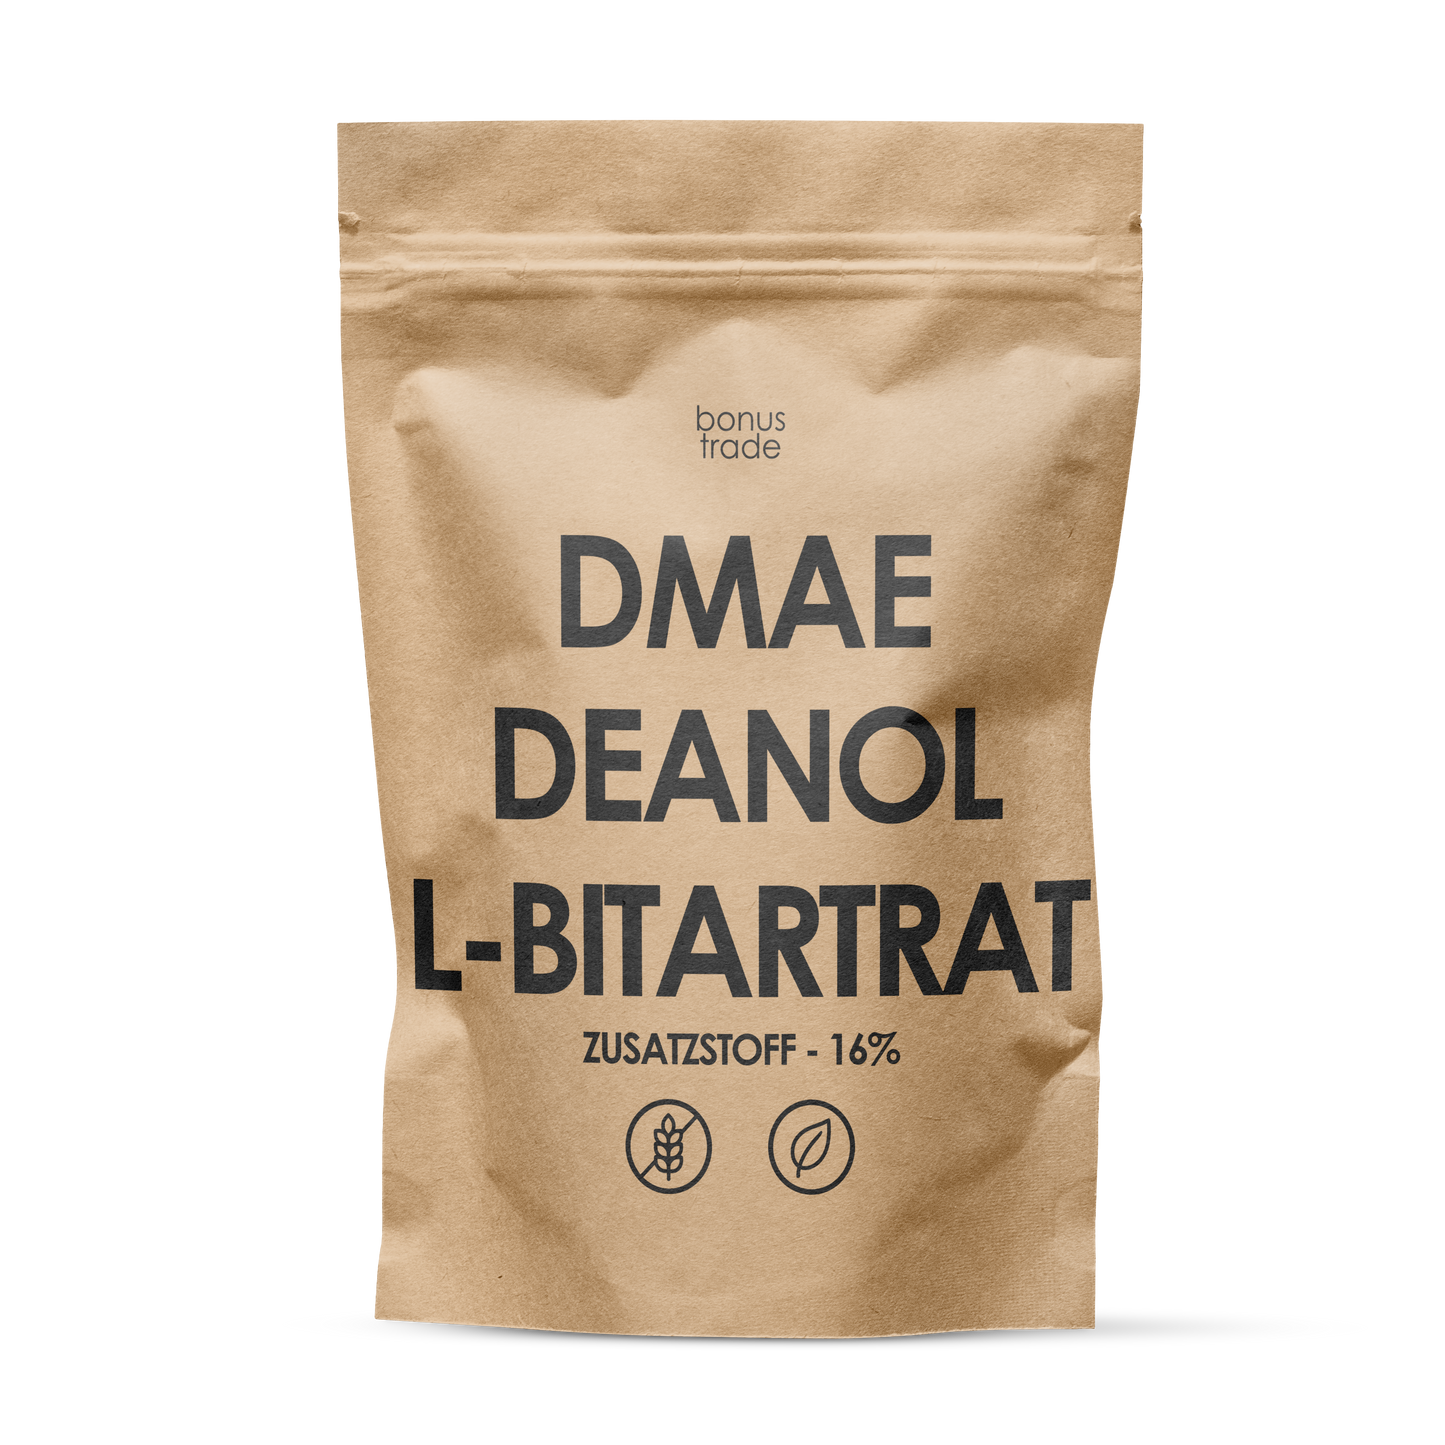 bonus-DMAE_Deanol_L-Bitartrat_Zusatzstoff